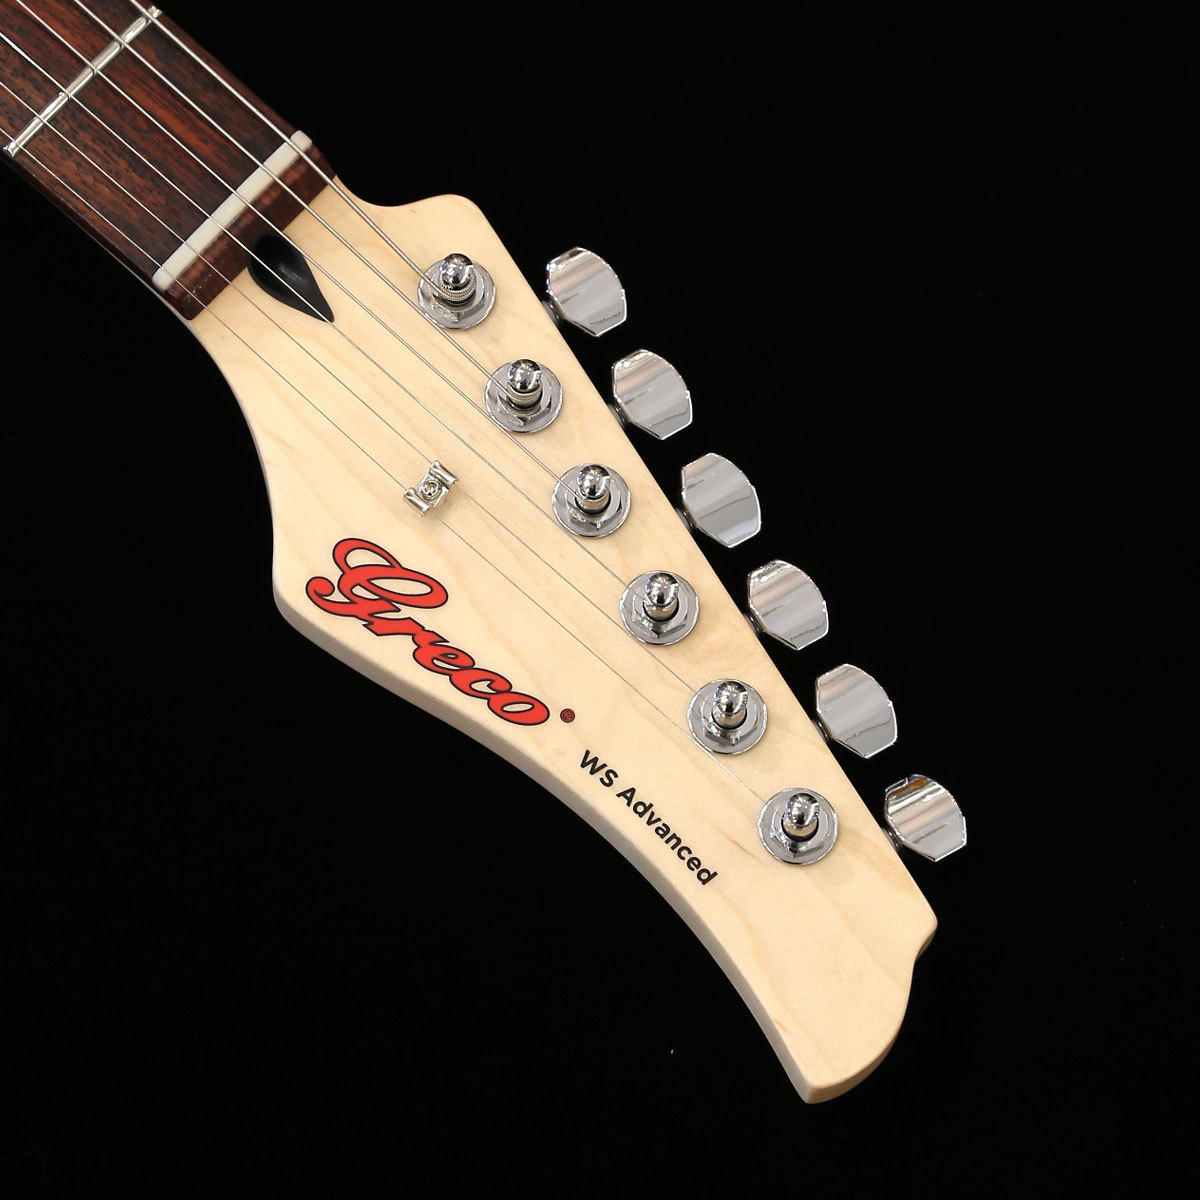 店名送料無料 Greco グレコ エレキギター「WS-Quilt 3S Trancelucent Red / Maple Fingerboard」 日本製 メイドインジャパン 国産ギター グレコ